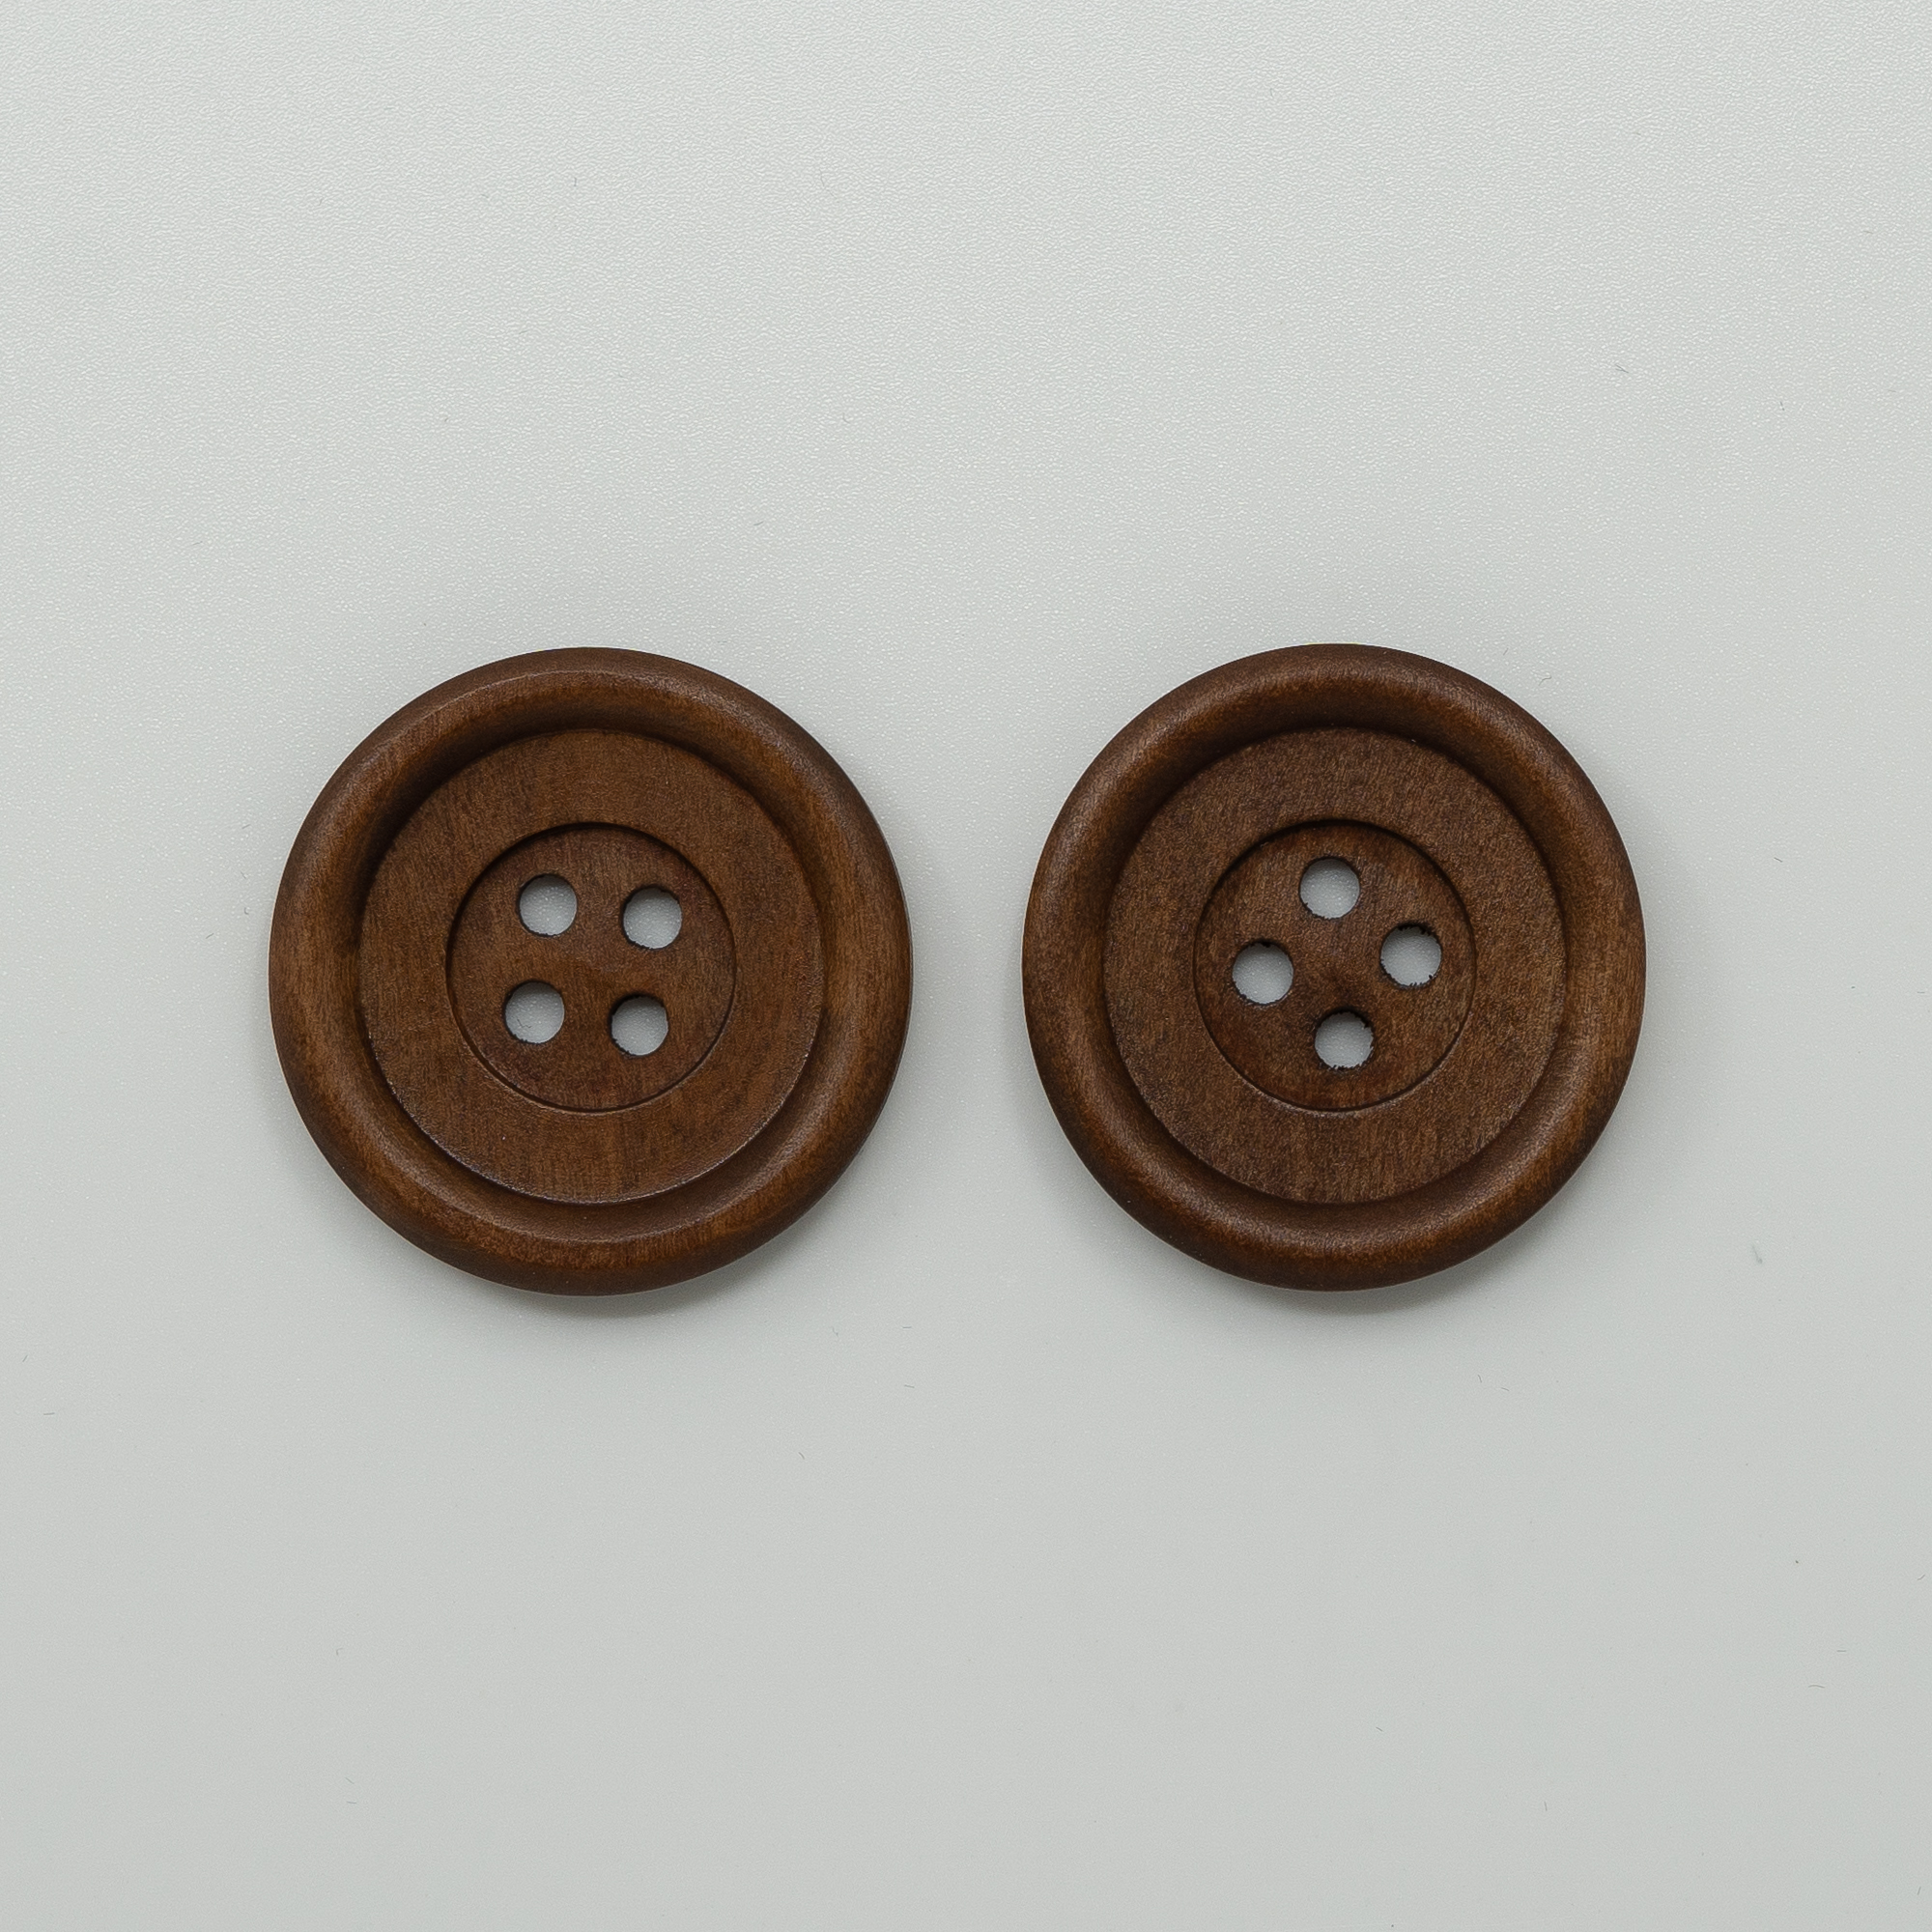  - Wooden button | Dark wood button | knitting - by HipKnitShop - 04/05/2020